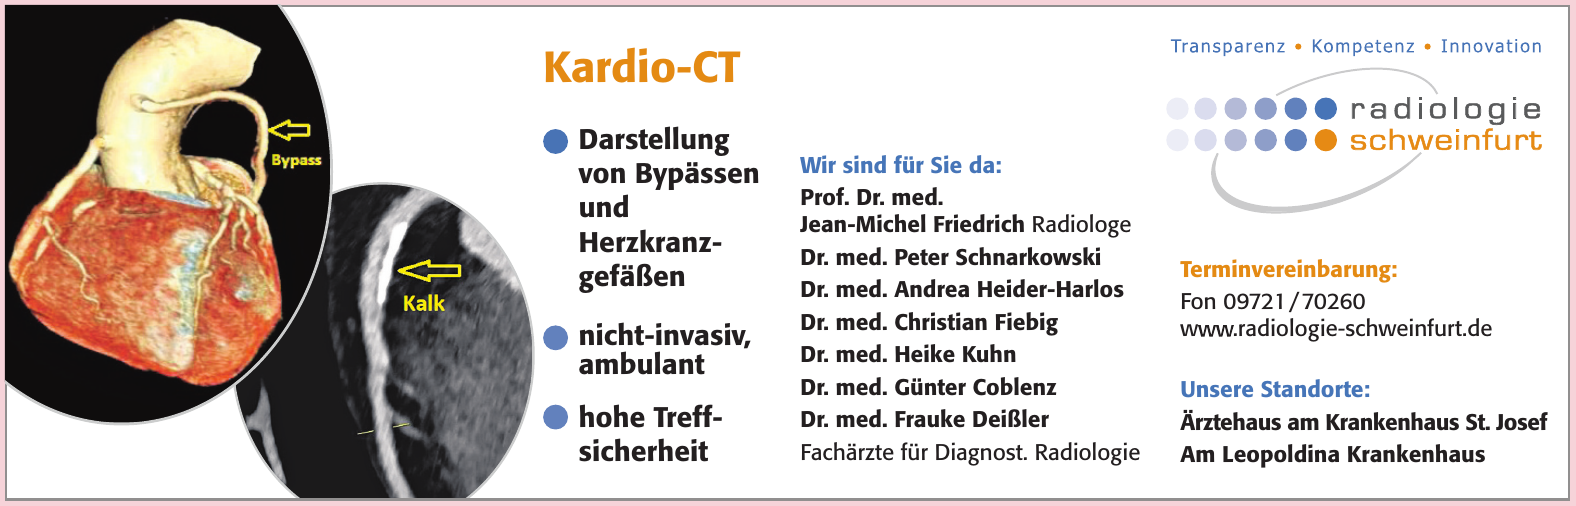 Radiologie Schweinfurt